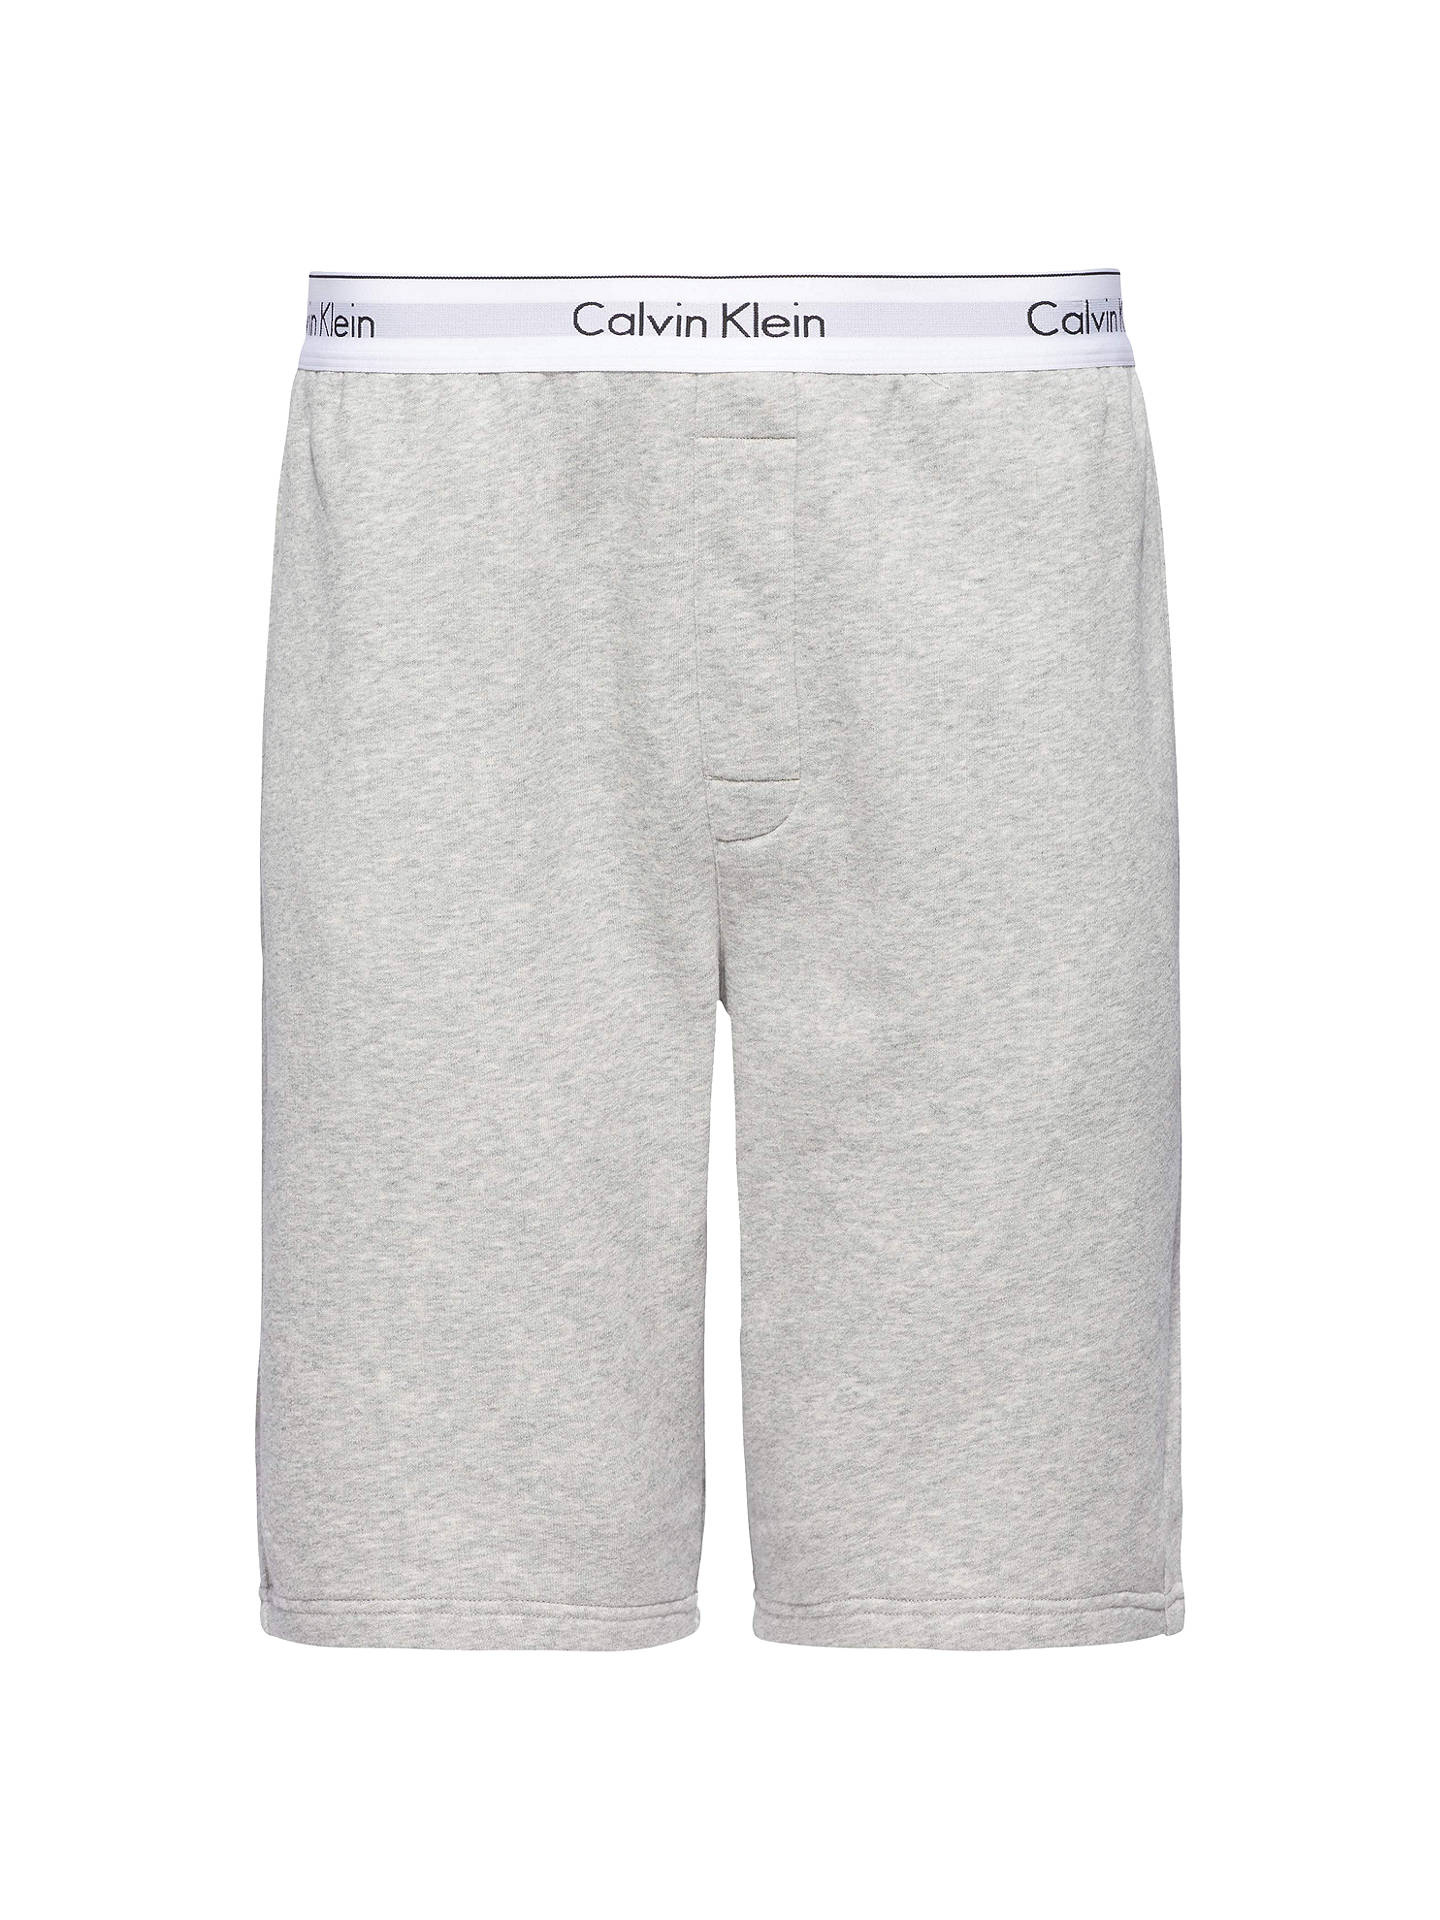 Calvin Klein CK Modern Cotton Lounge Shorts at John Lewis & Partners